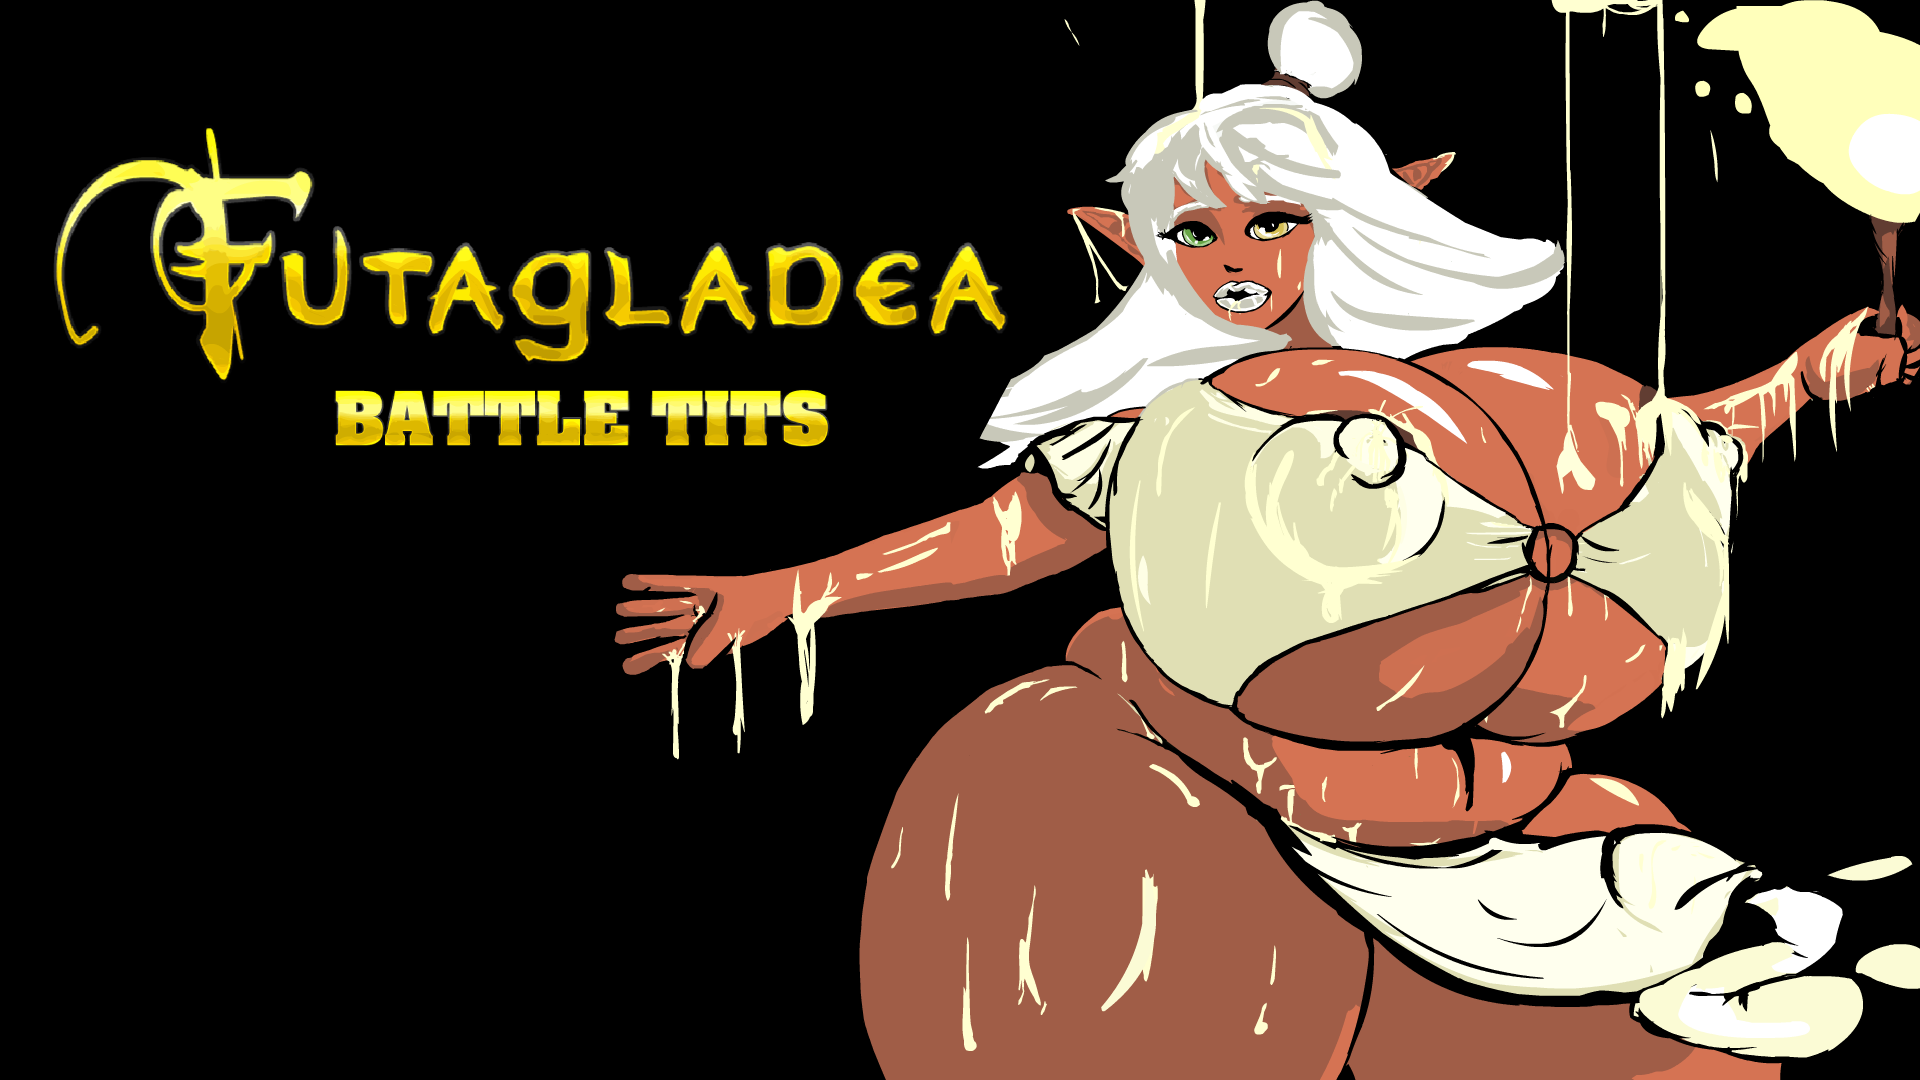 Futagladea v0.412 - free game download, reviews, mega - xGames